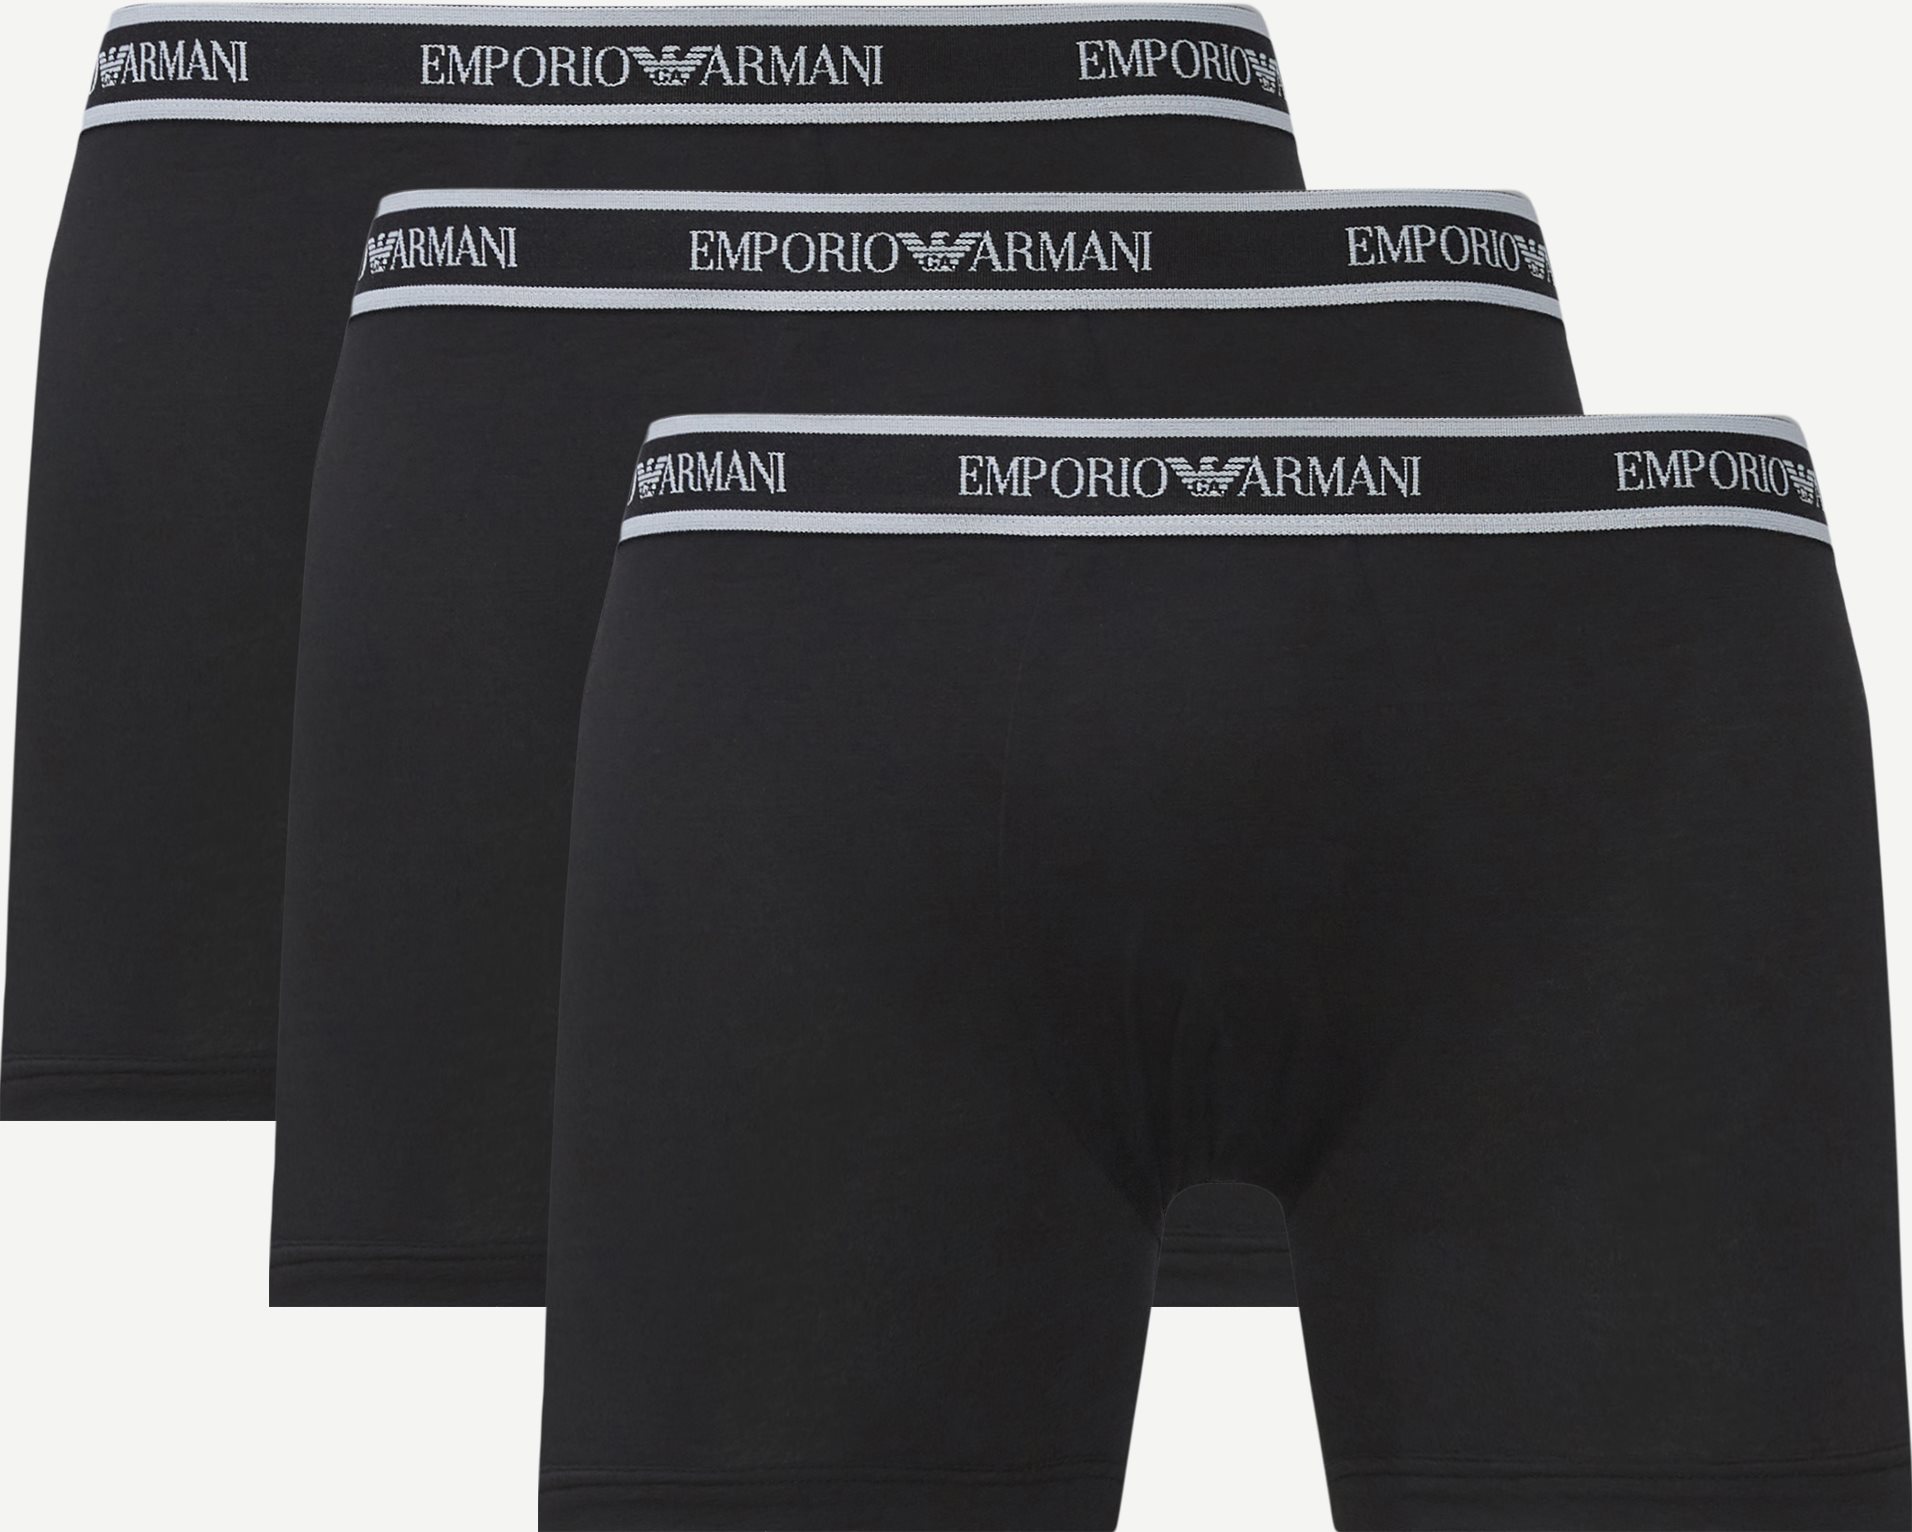 Emporio Armani Underwear 2F717-111473 Black